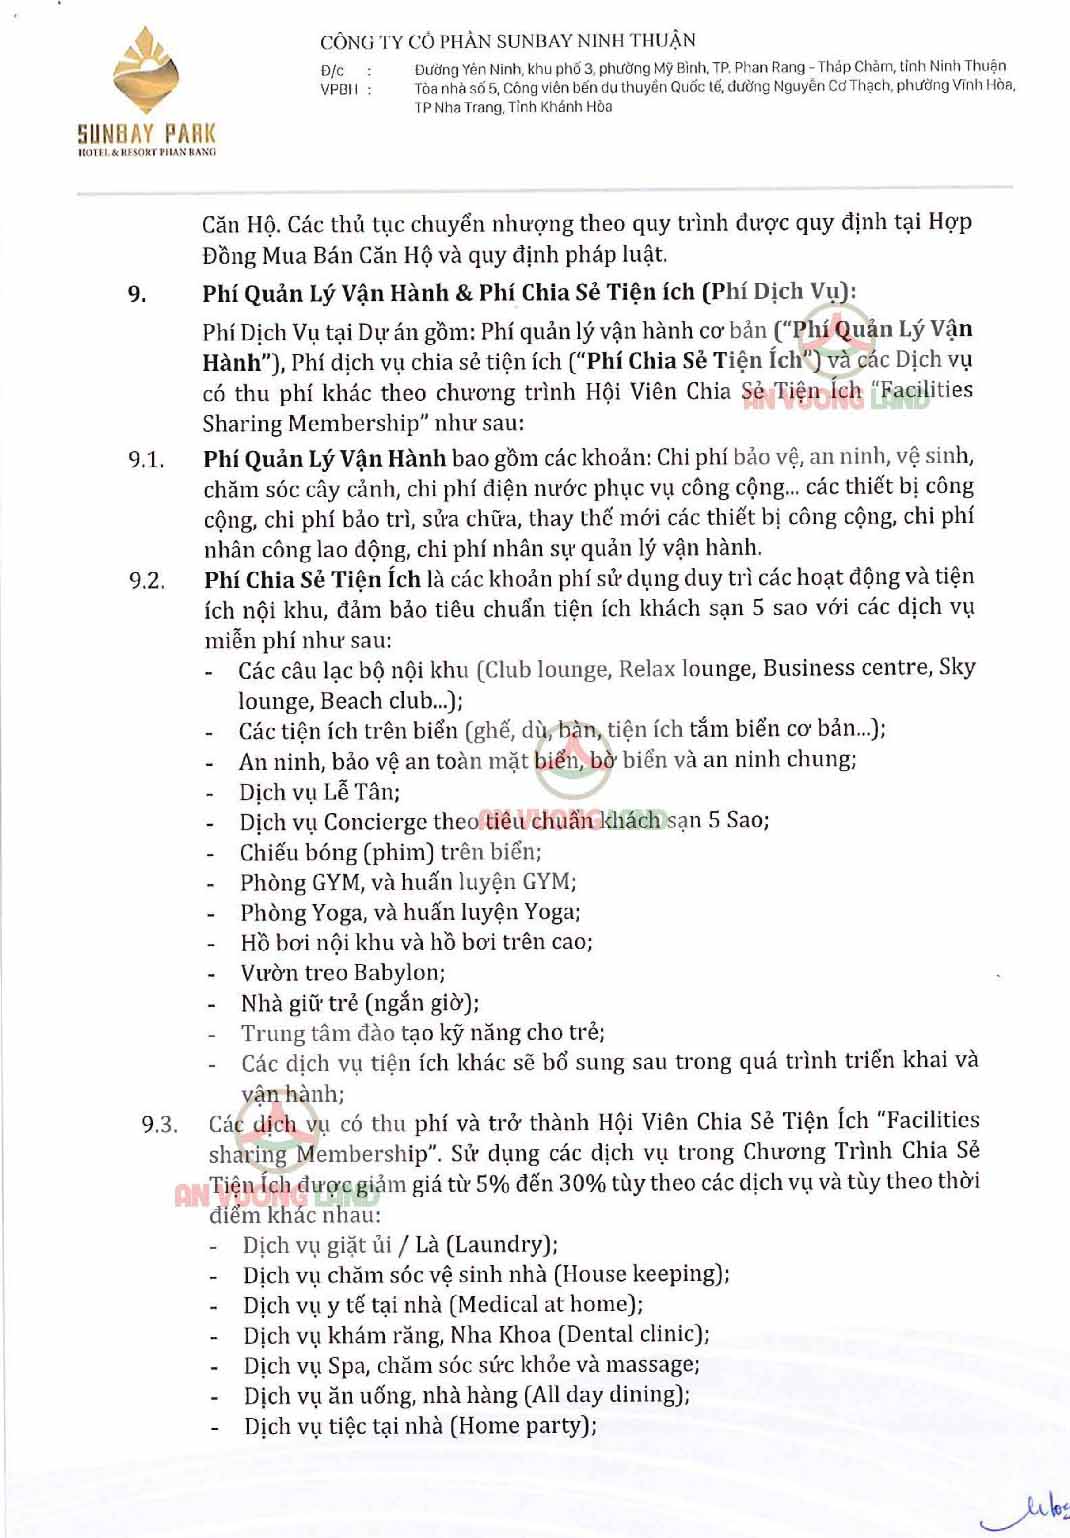 Chính sách bán hàng Sunbay Park Phan Rang Ninh Thuận (8)